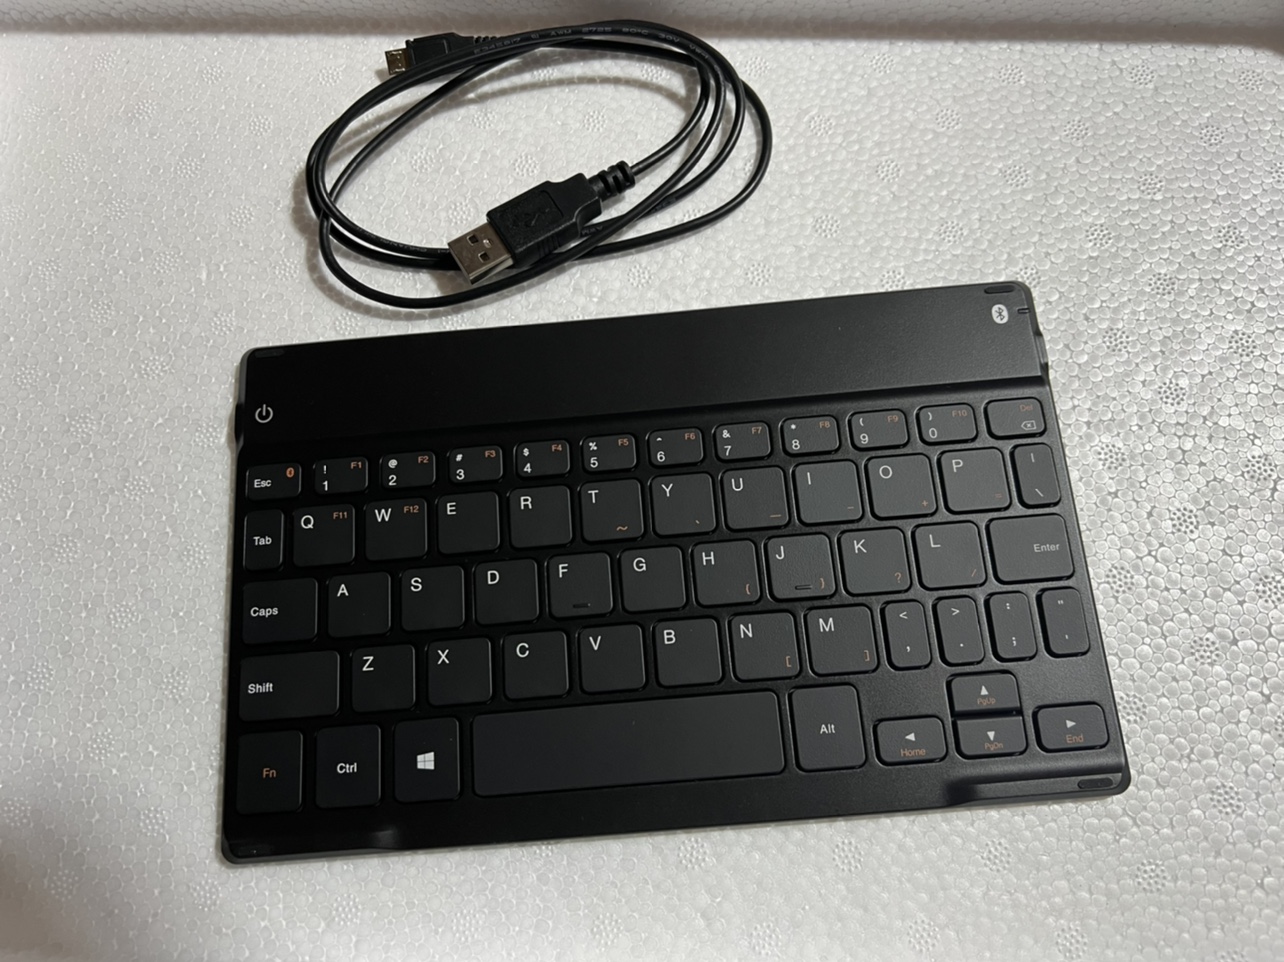 全新原装联想IPAD无线蓝牙键盘三系统通用手机平板充电超薄键盘